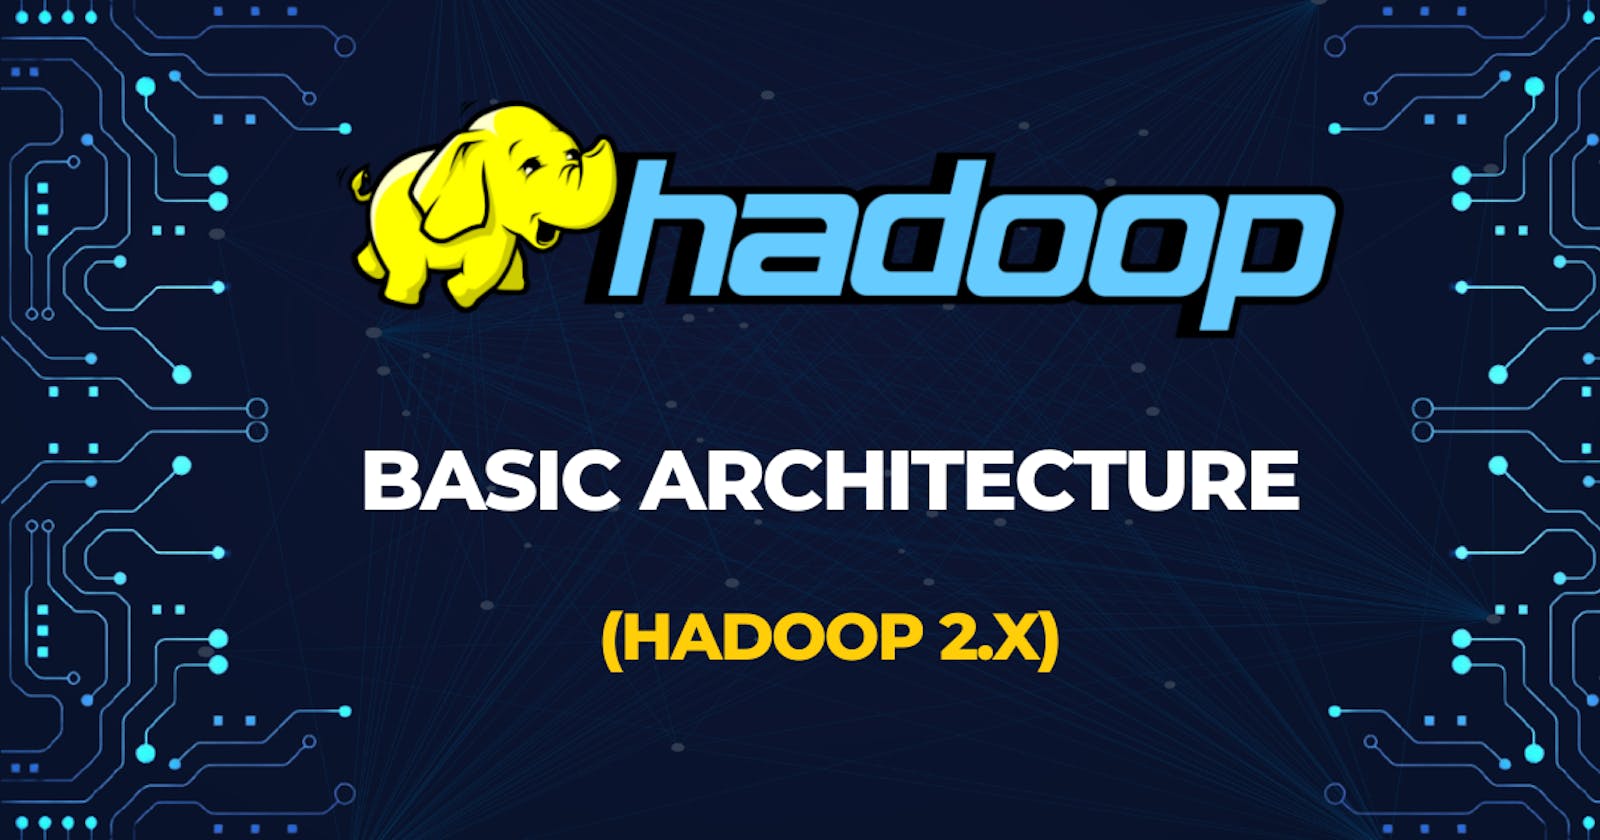 HADOOP: Basic Architecture (Hadoop 2.x)